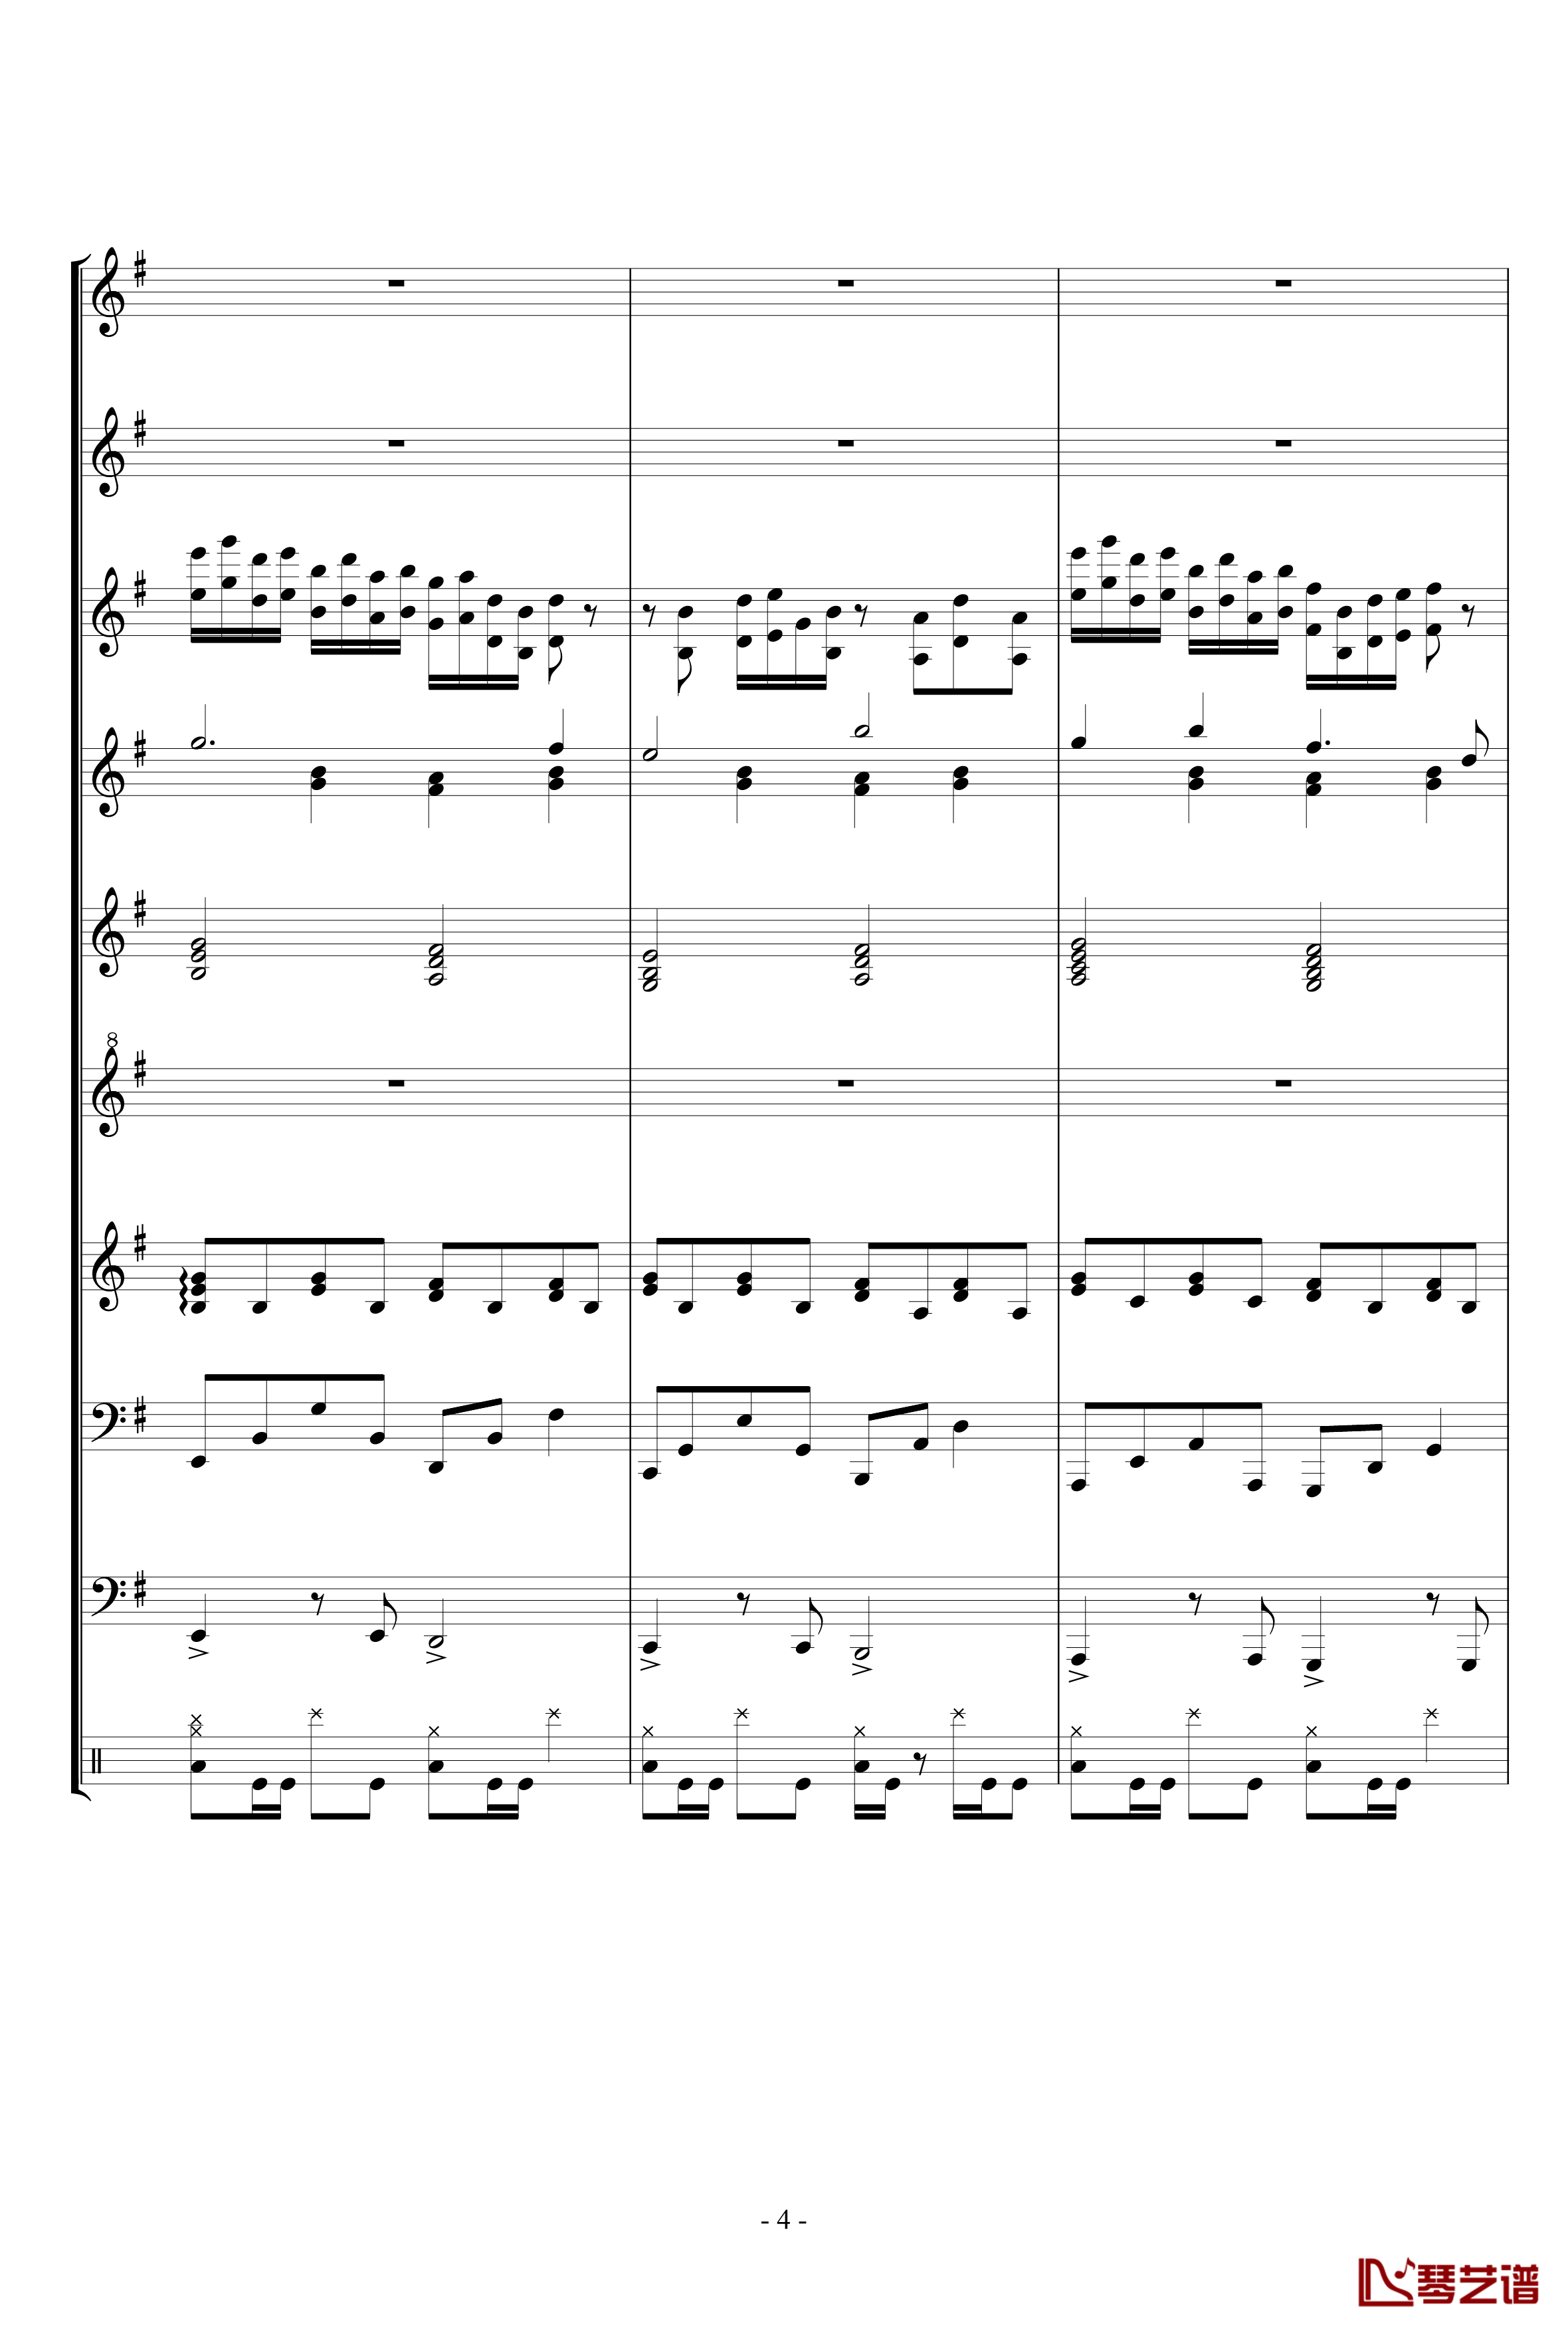 キミガタメ 钢琴谱-总谱-Suara4